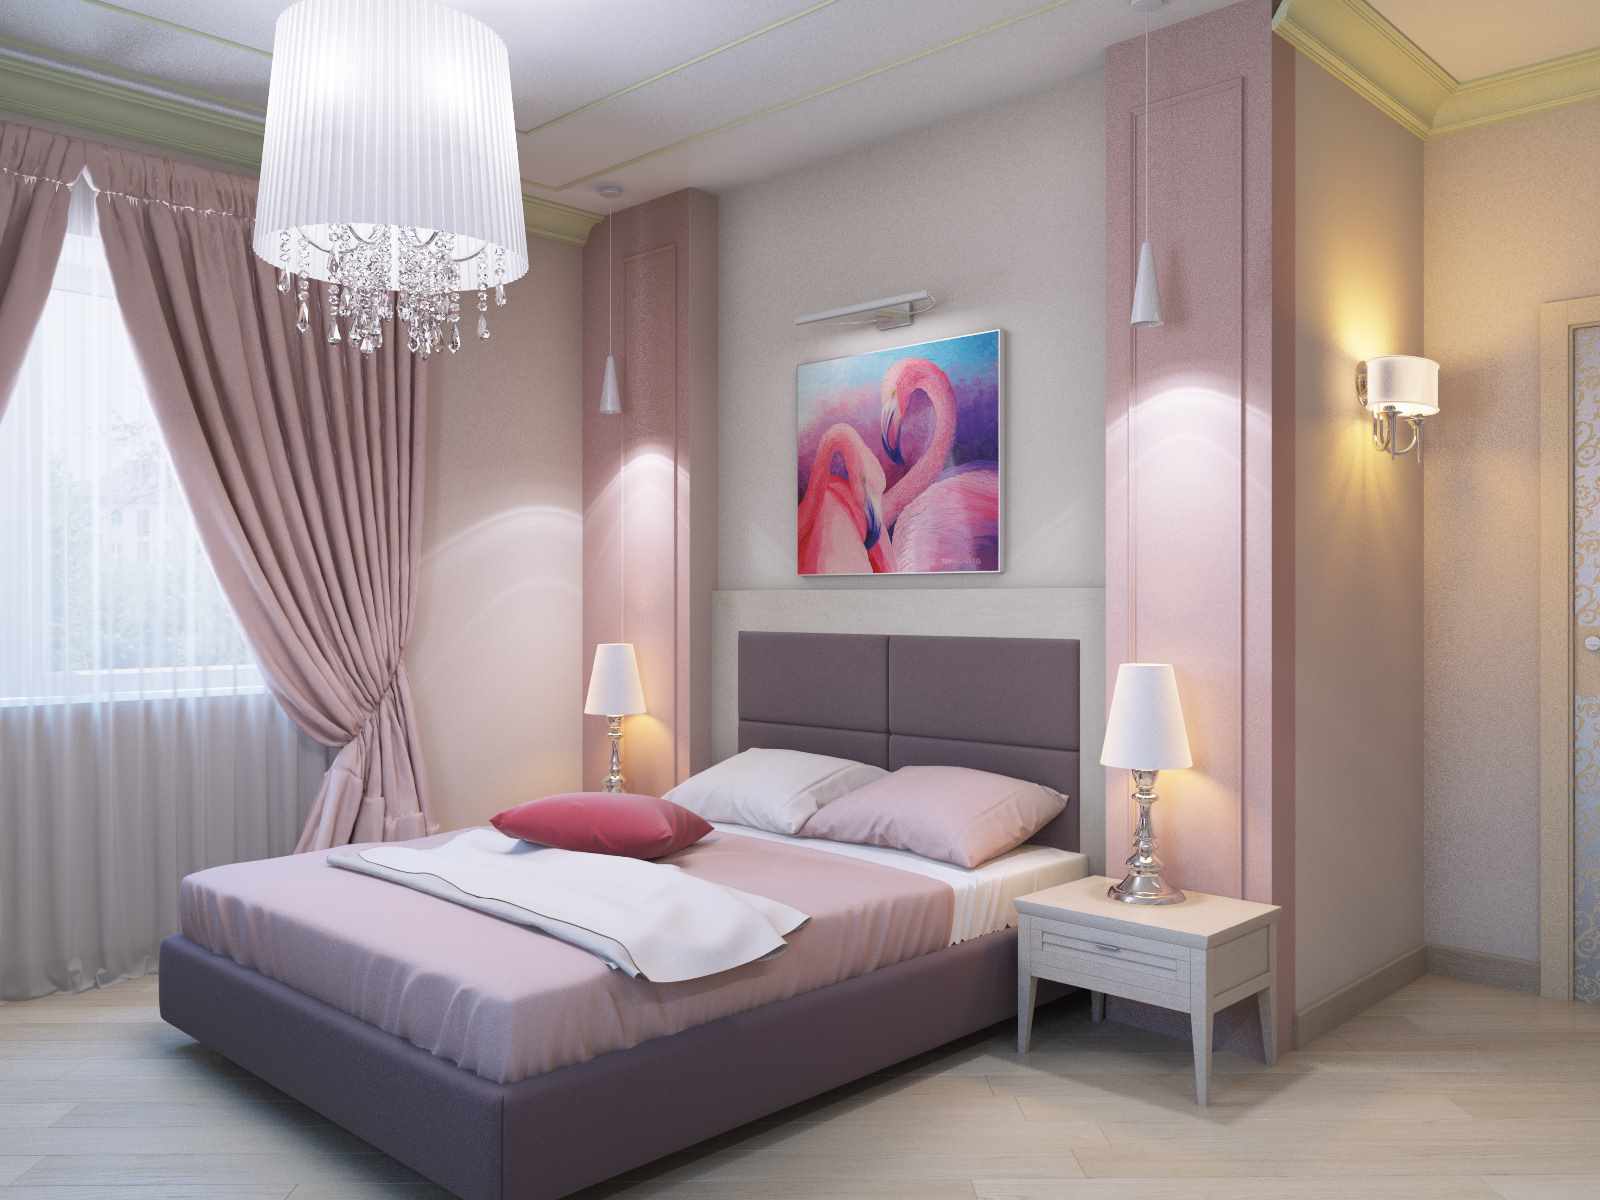 Un exemple de décoration lumineuse du style des murs de la chambre